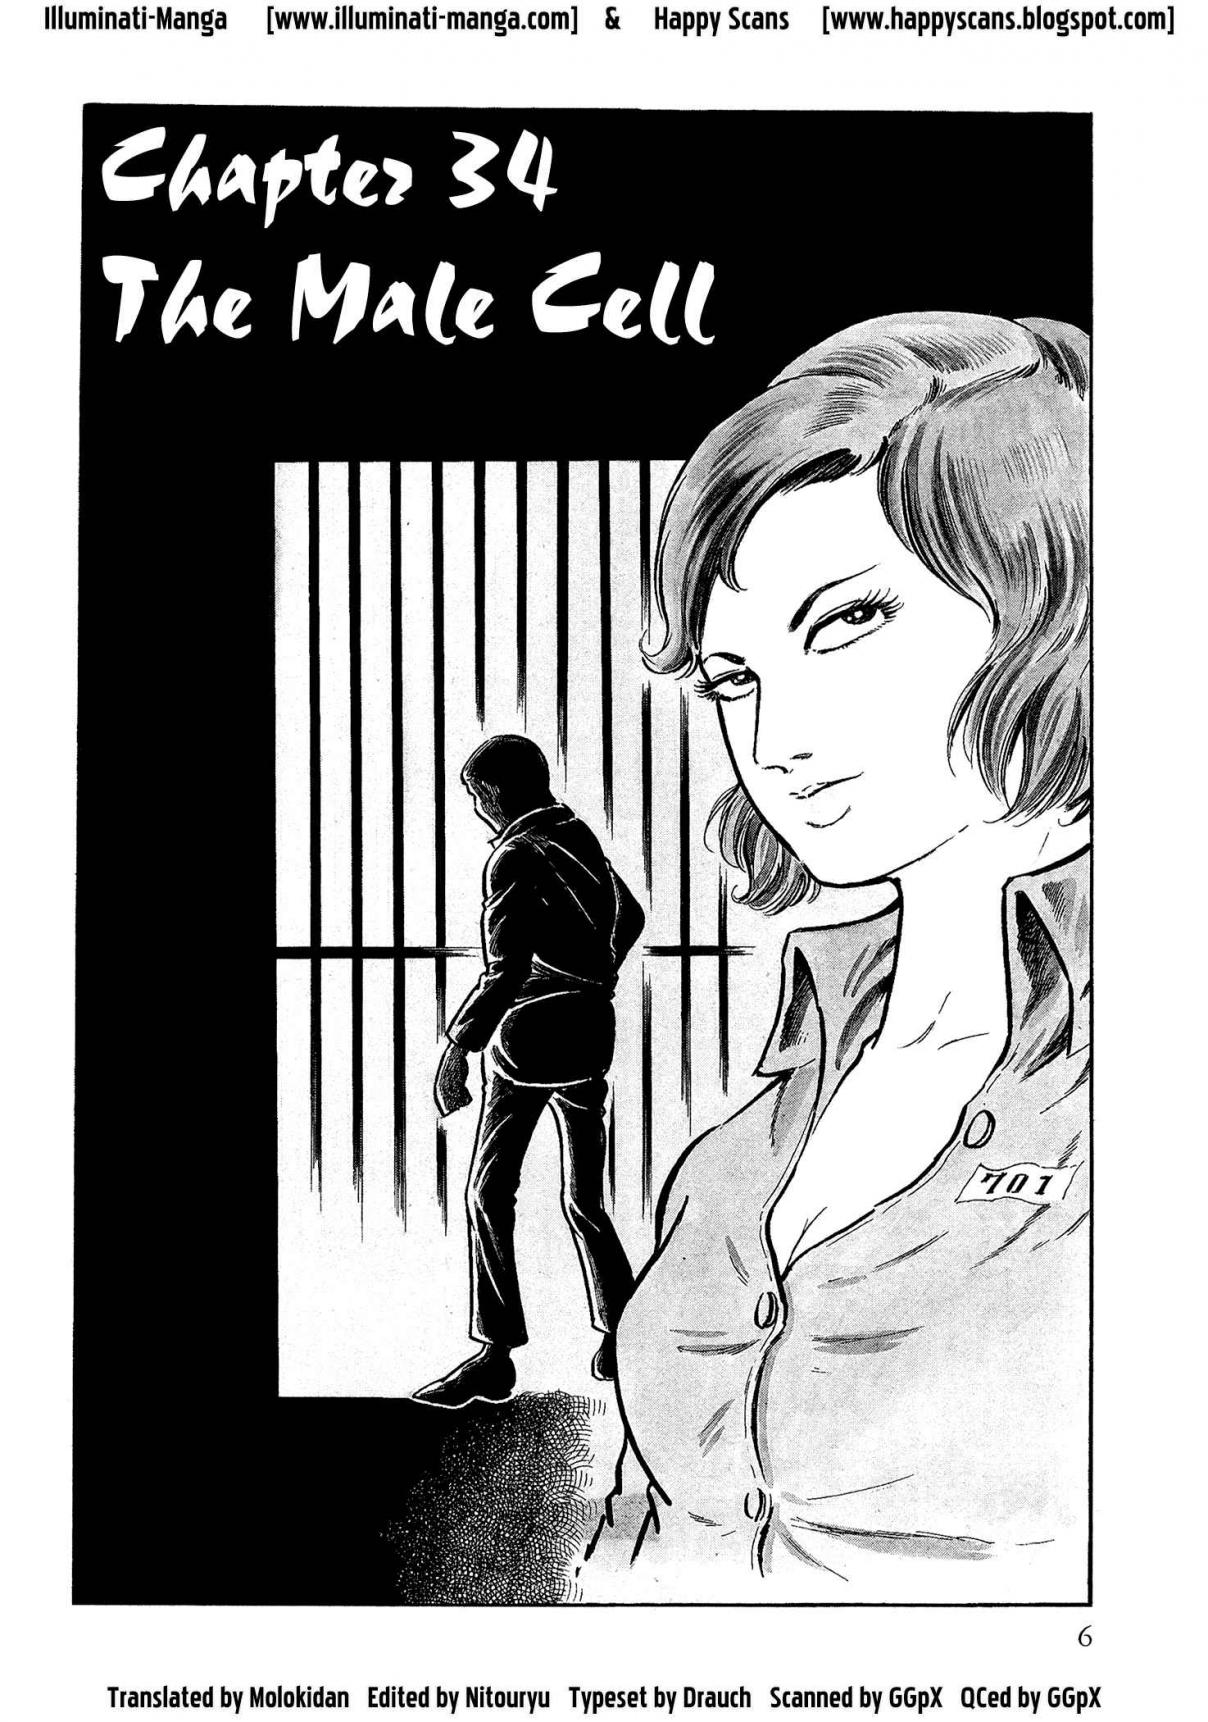 Sasori Vol. 3 Ch. 34 The Male Cell